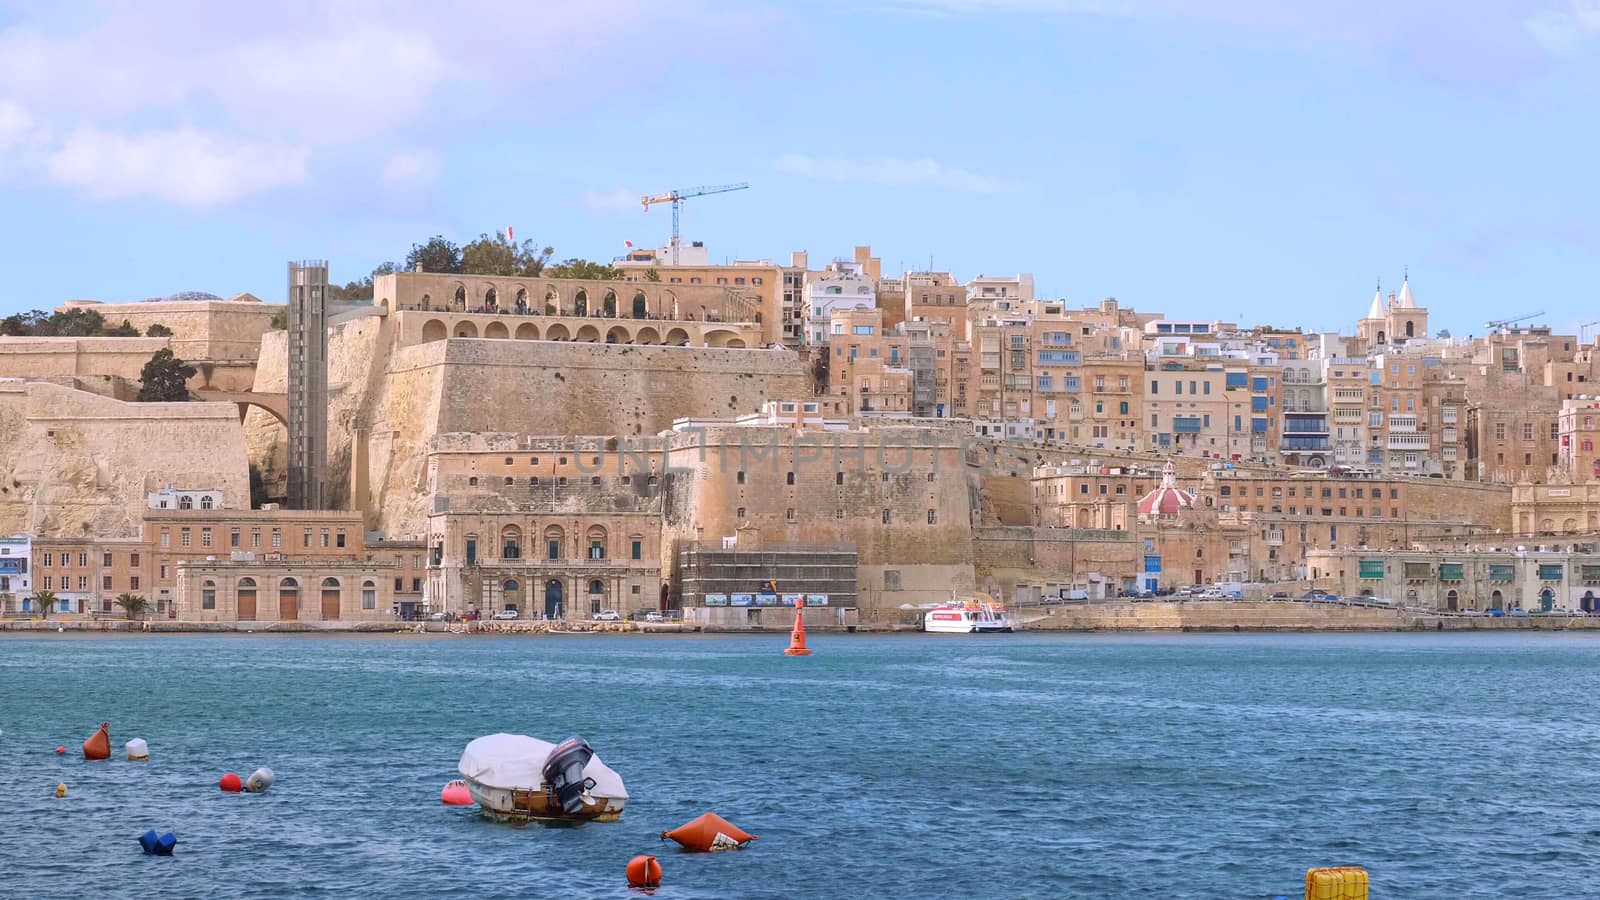 Amazing skyline of Valletta in Malta by Lattwein